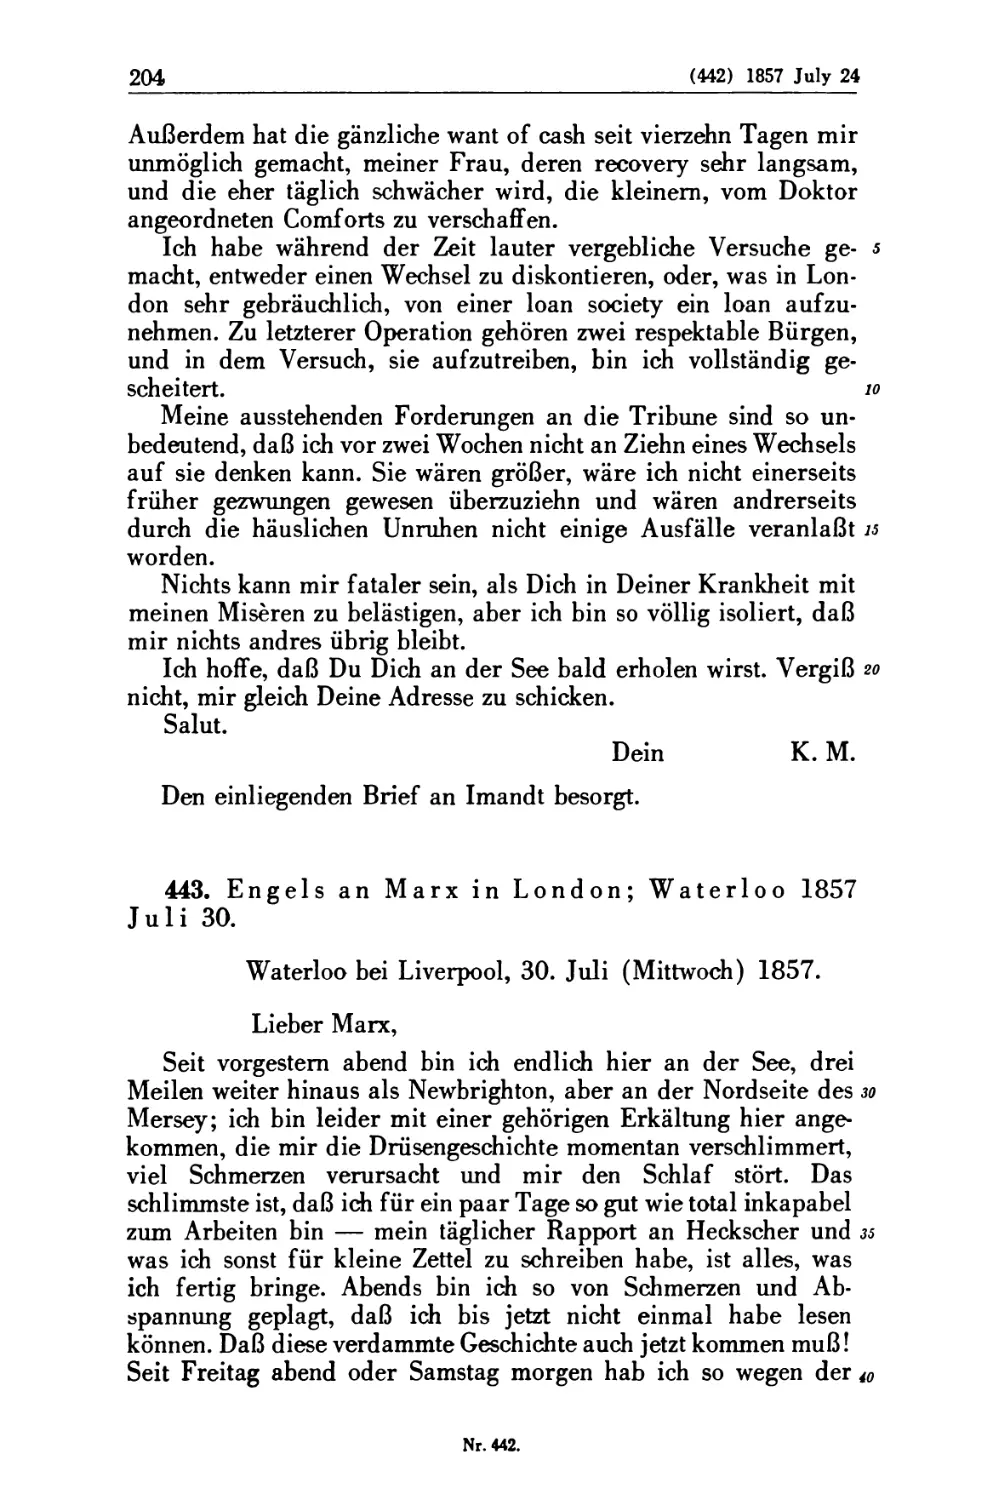 443. Engels an Marx in London; Waterloo 1857 Juli 30